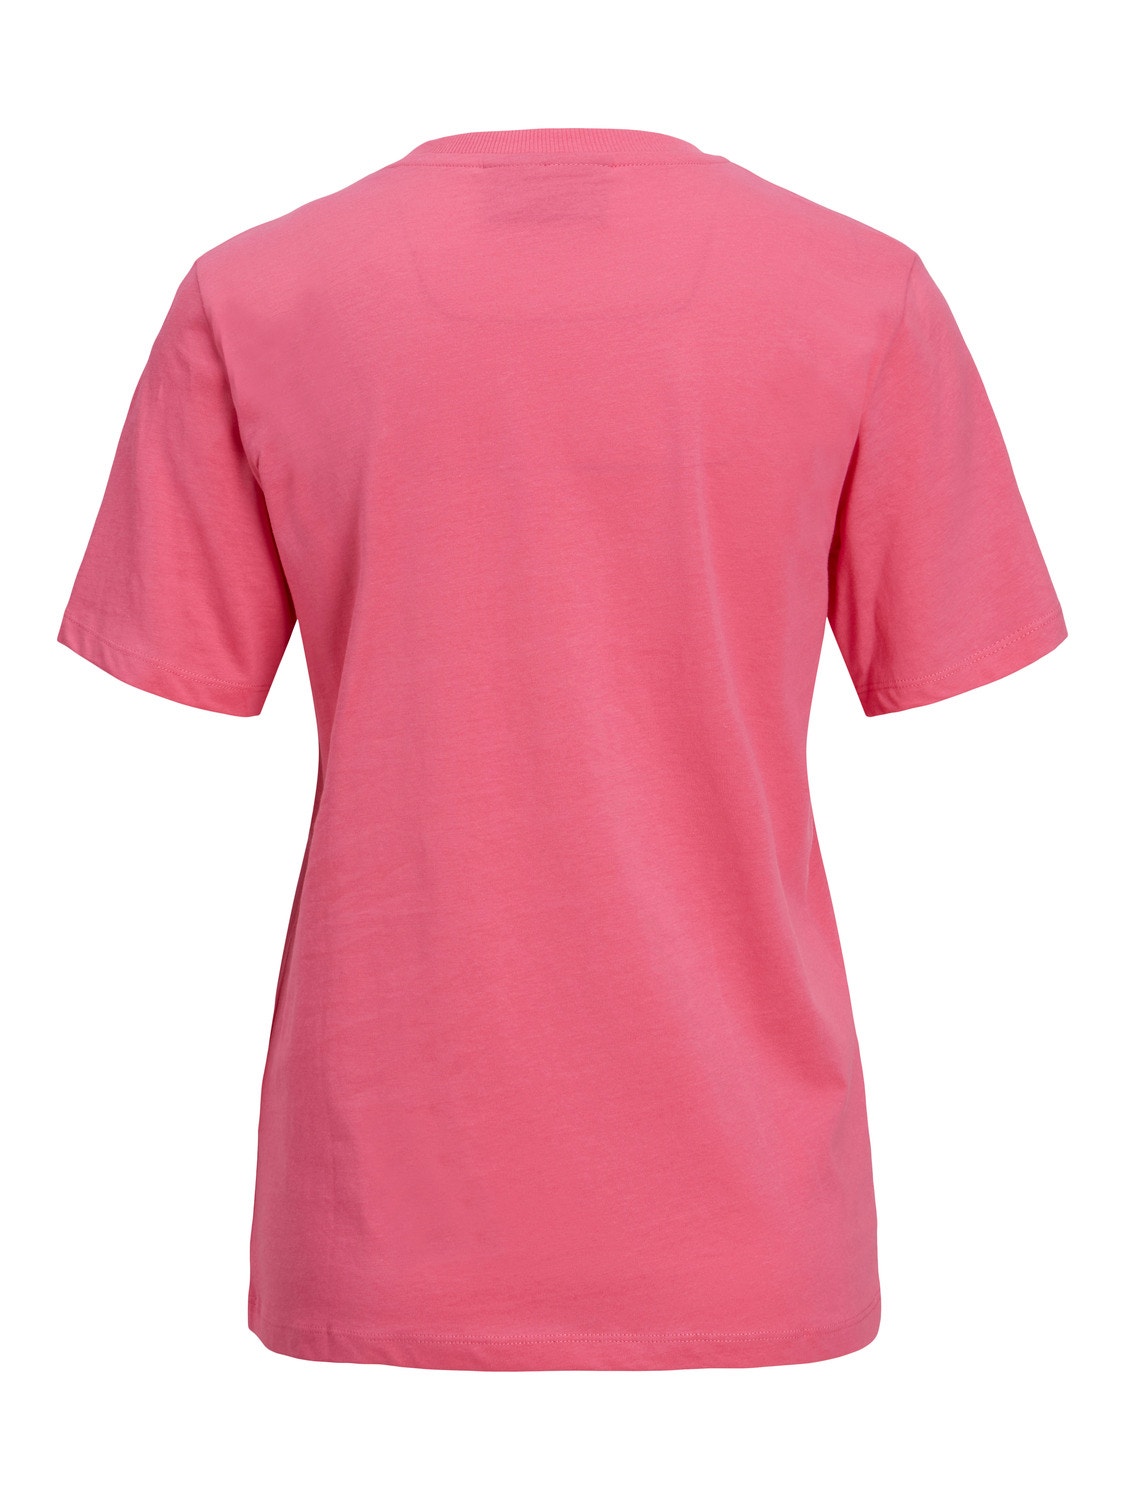 JJXX JXVEGAS T-shirt -Carmine Rose - 12234657